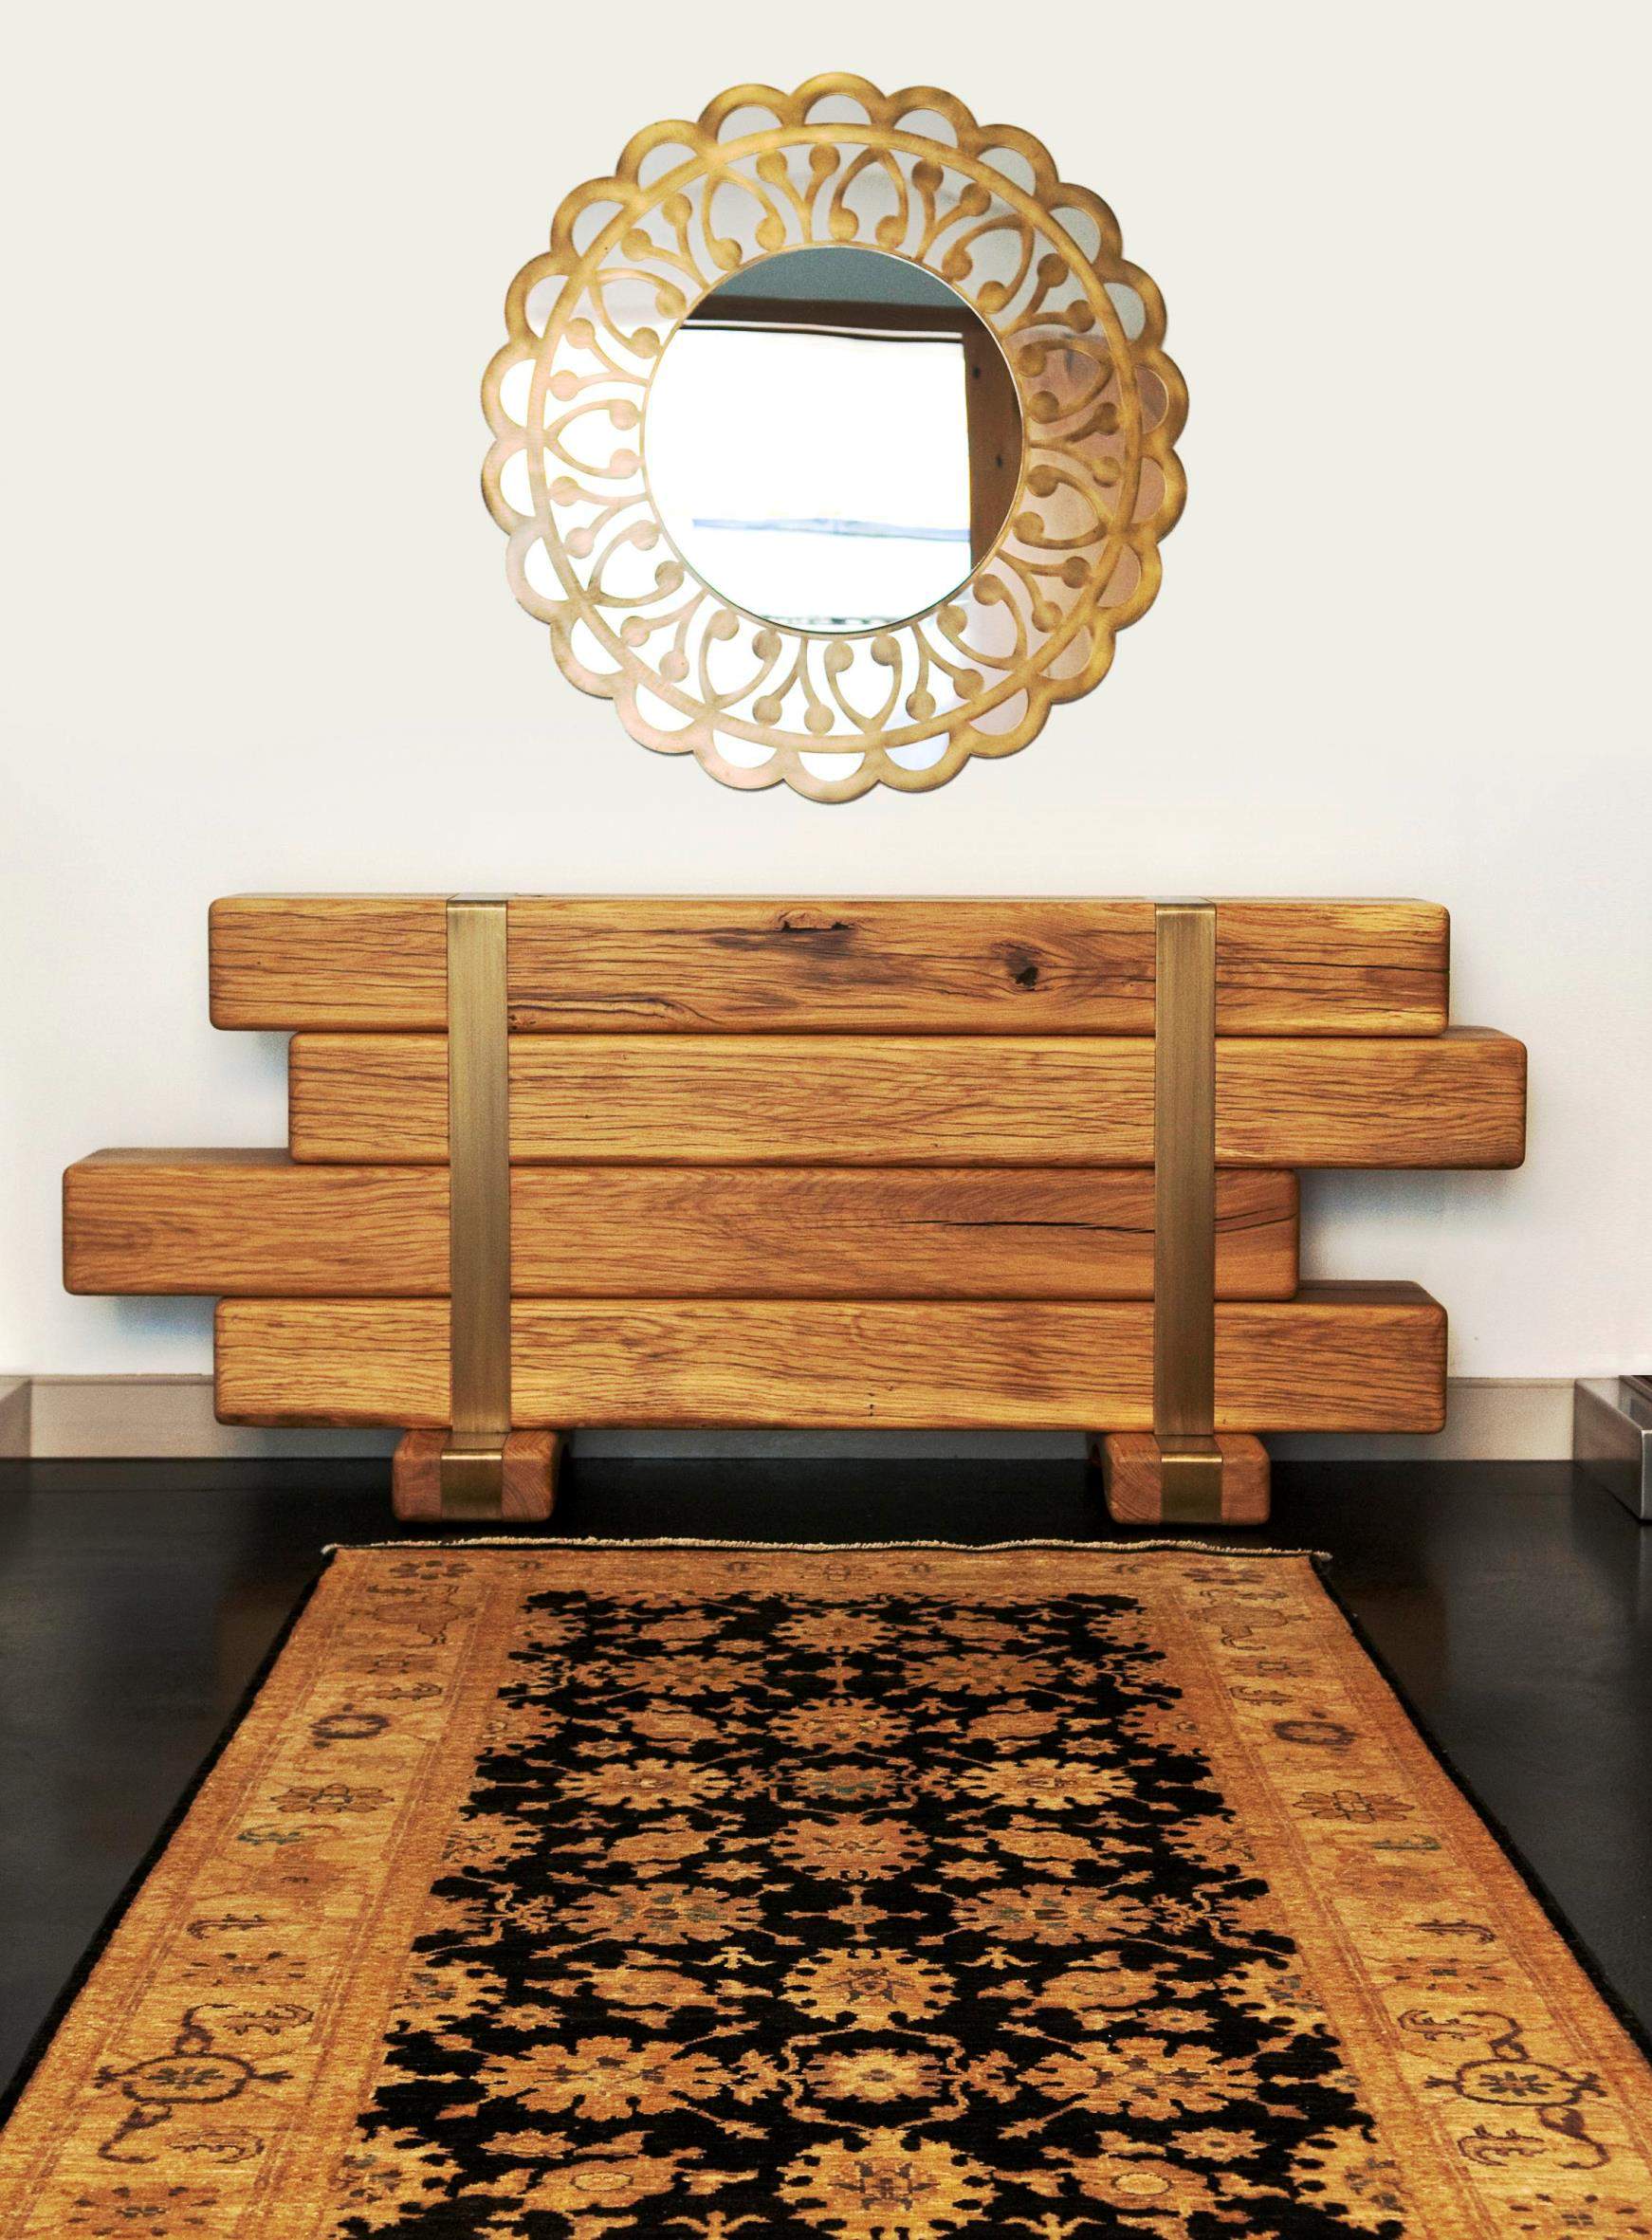 שטיח זיגלר ב"צמר שטיחים יפים" בגווני זהב ושחור פרוש מתחת לראי עגול